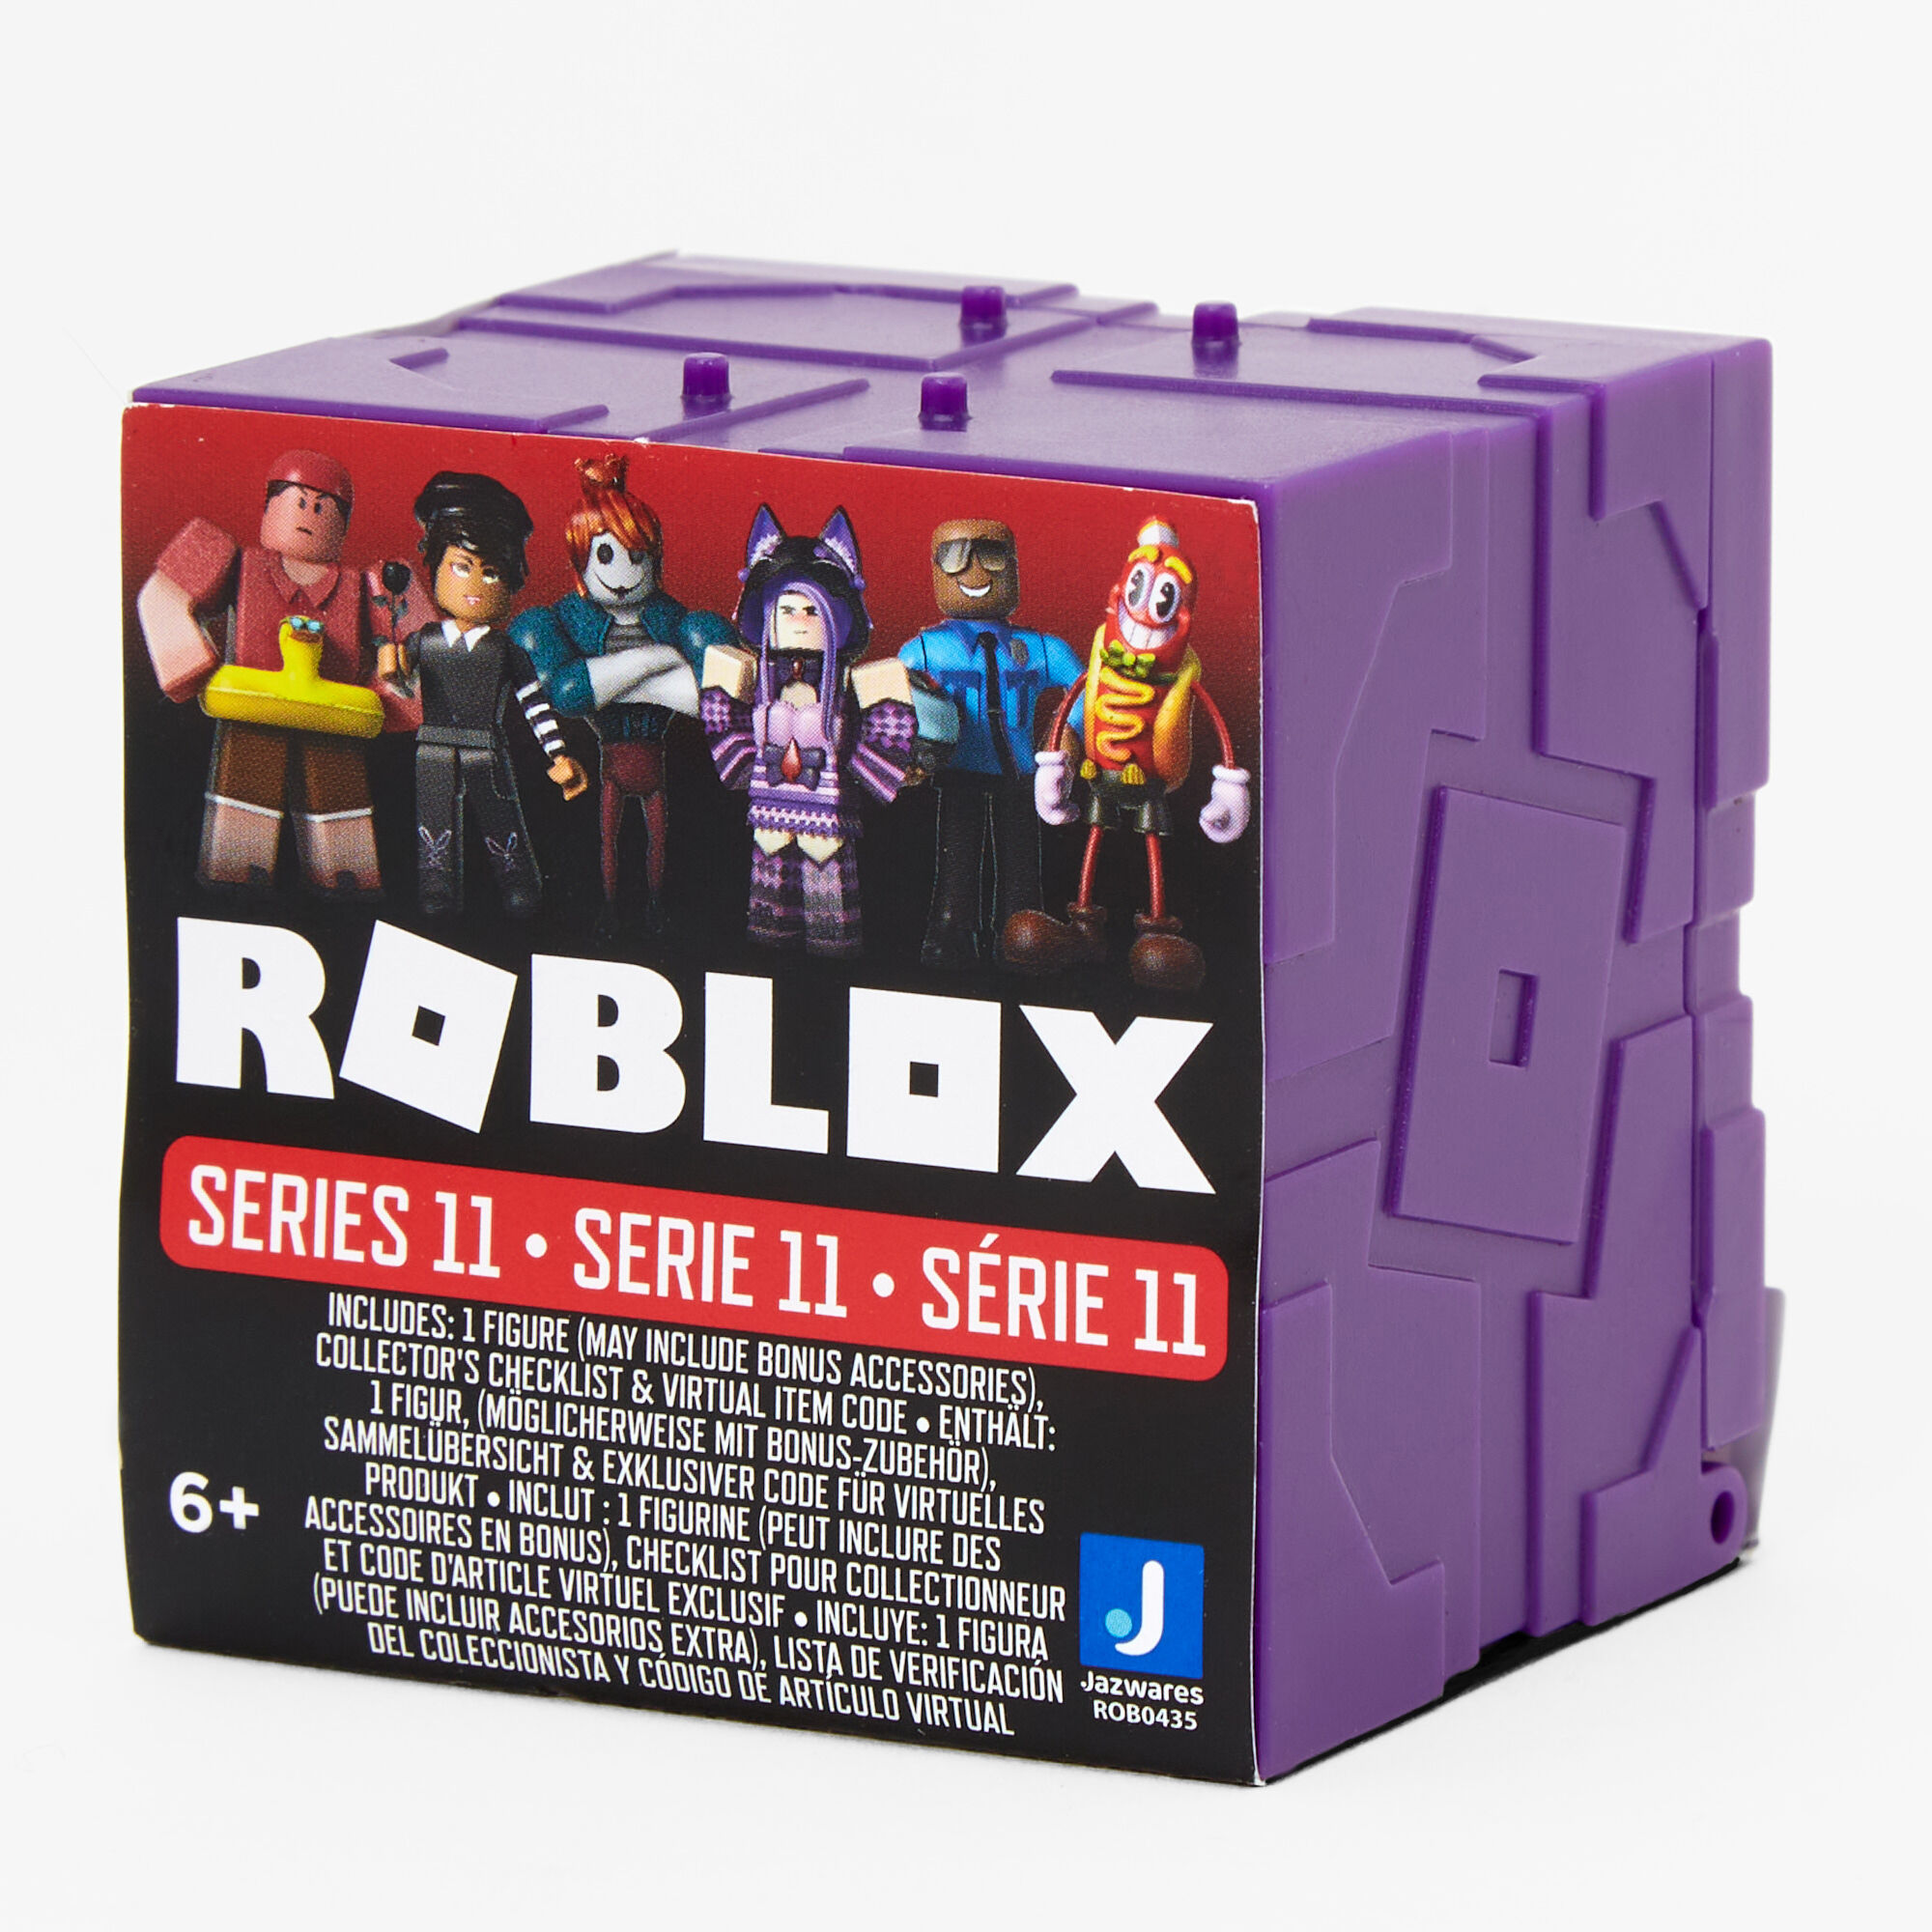 Roblox: Saiba como usar códigos e ganhar itens grátis - Resenha Game Club